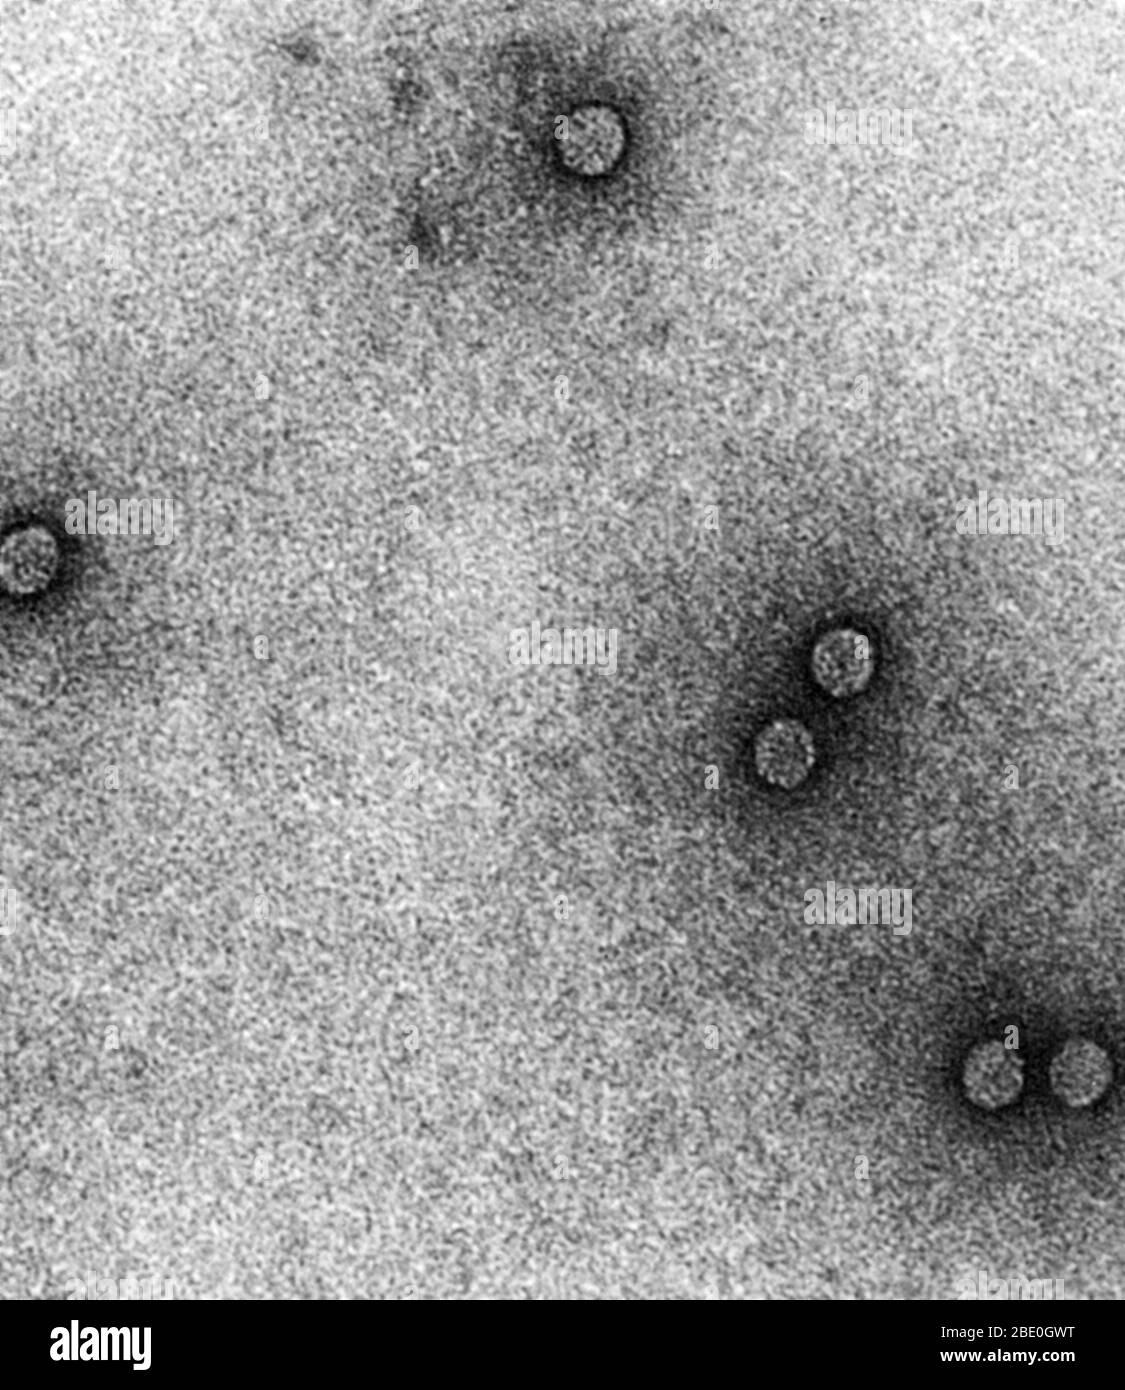 Micrographie électronique à transmission (TEM) de rhinovirus, qui causent le rhume. Agrandissement : x 200 000 euros. Banque D'Images